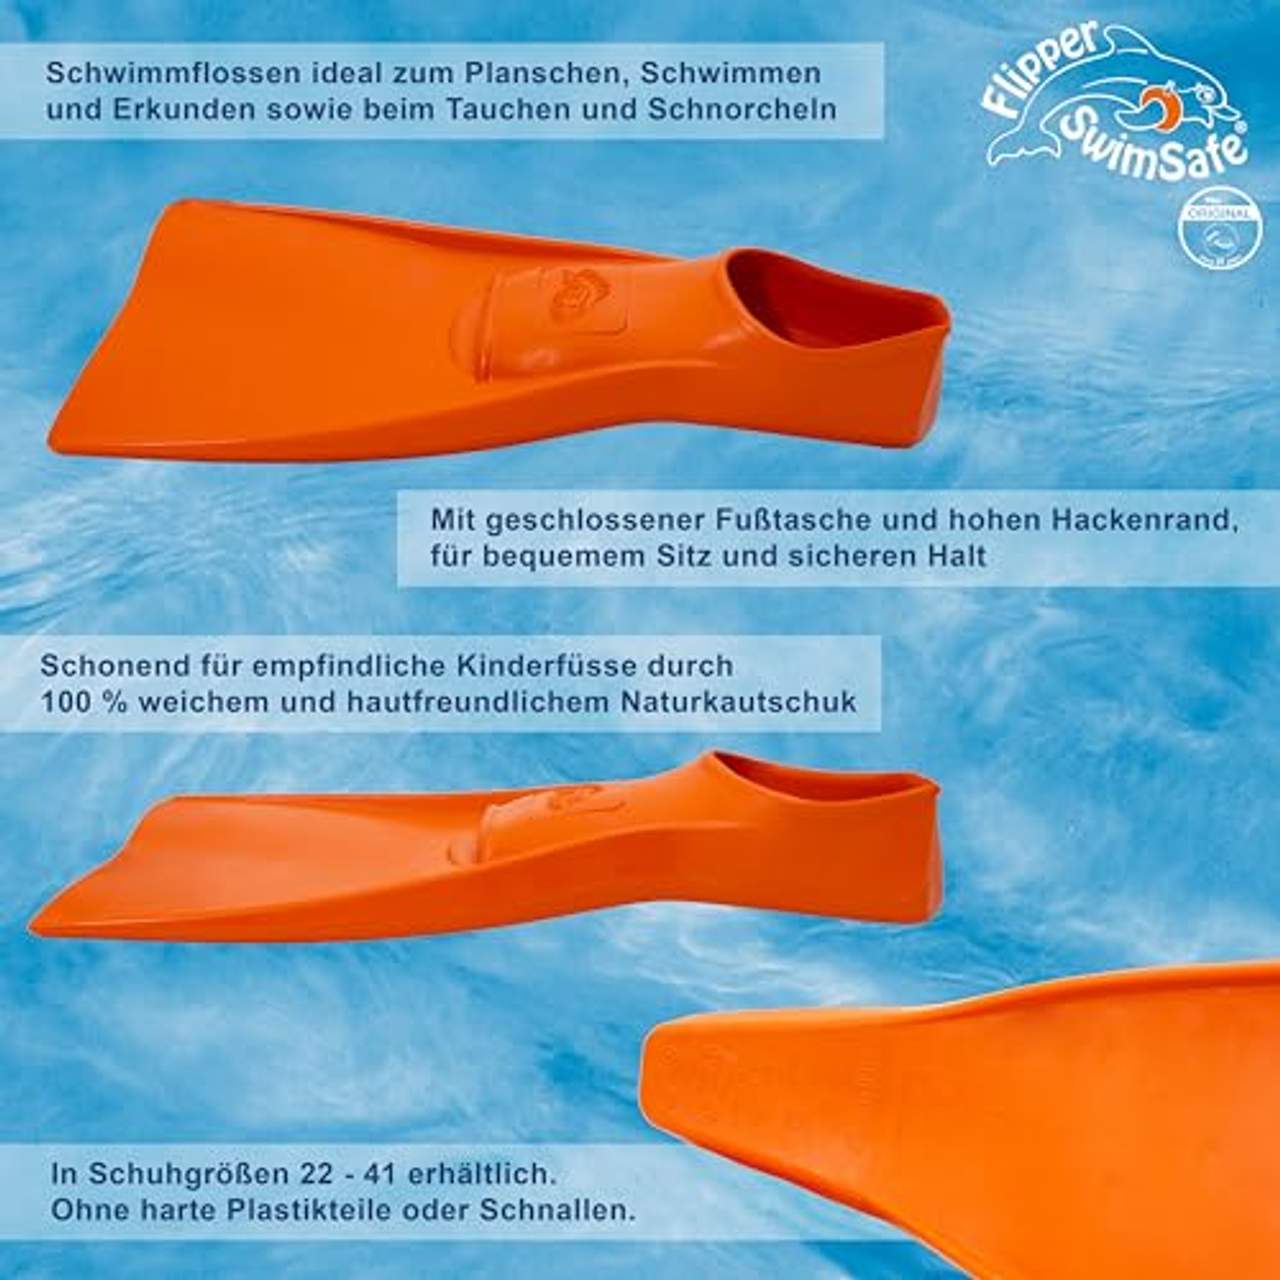 Flipper SwimSafe Flossen für Kinder- und Kleinkinder